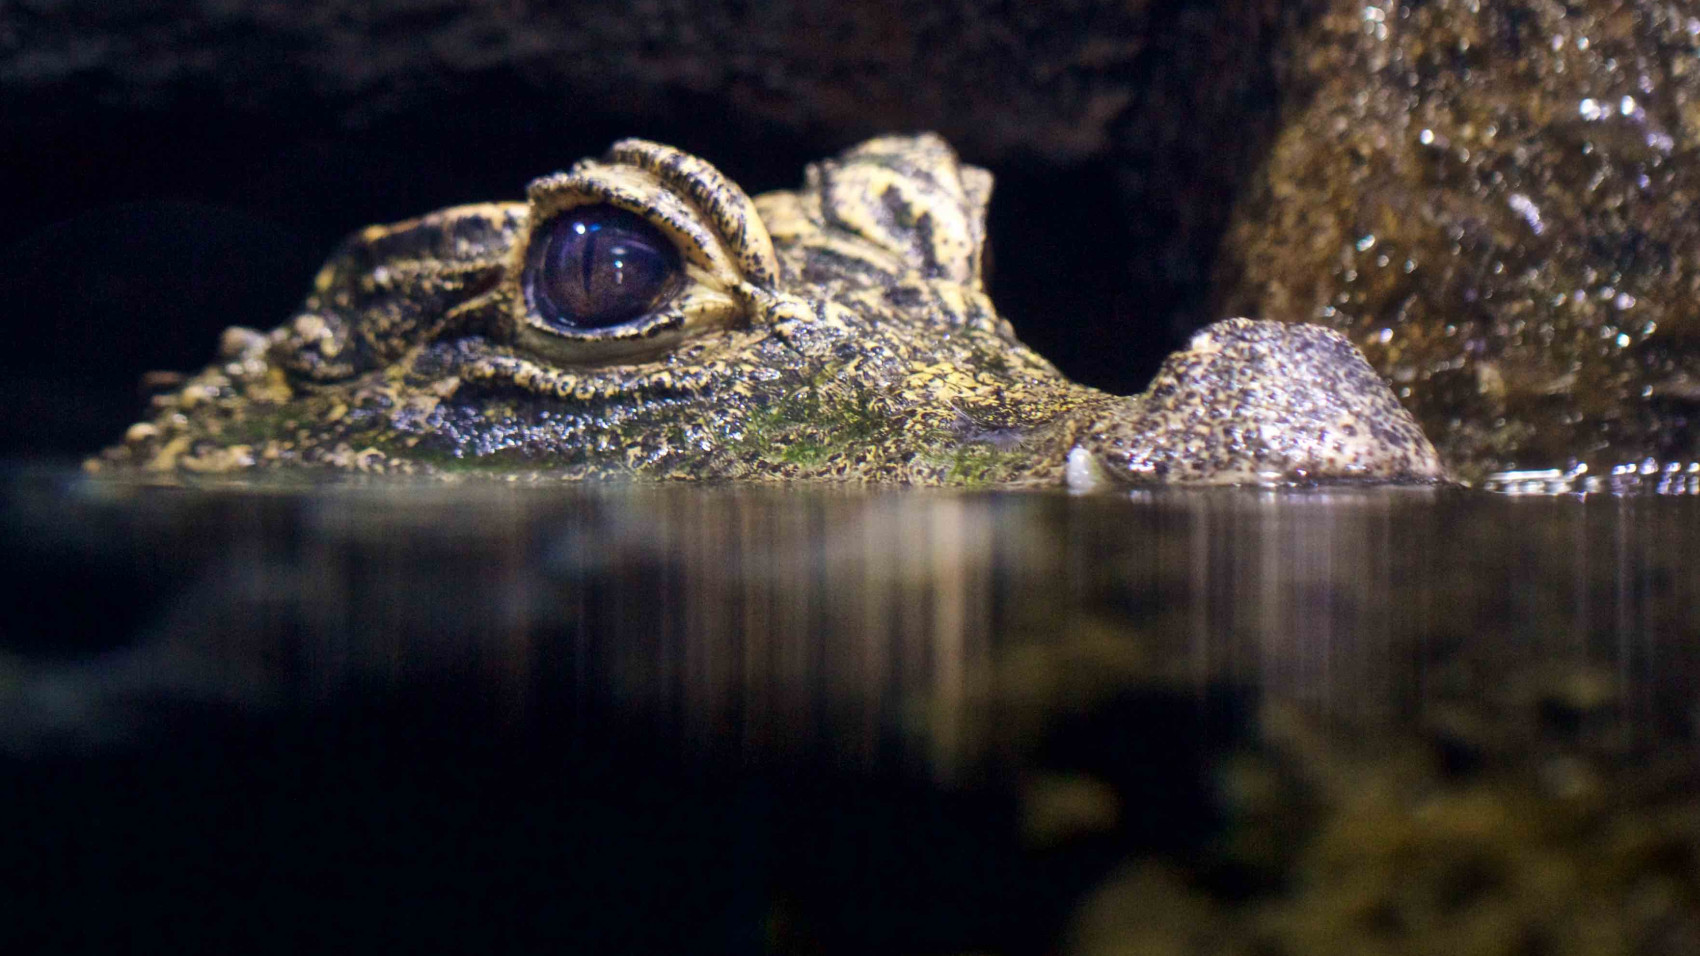 Nye krokodiller i Regnskoven